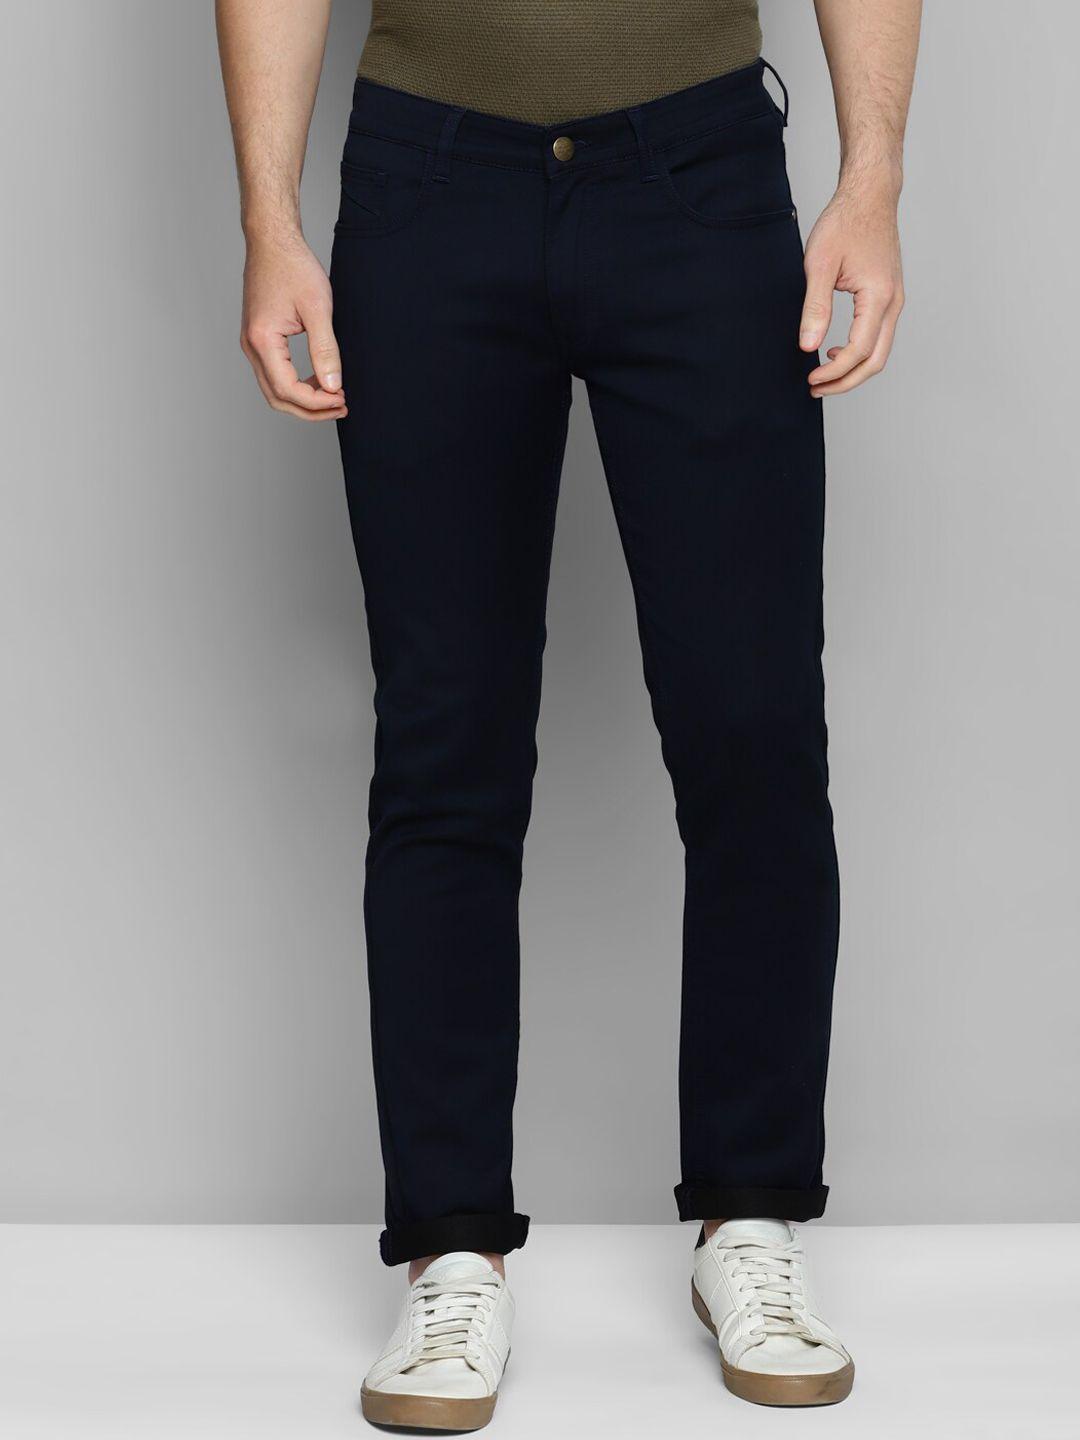 allen-cooper-men-comfort-clean-look-mid-rise-cotton-stretchable-jeans